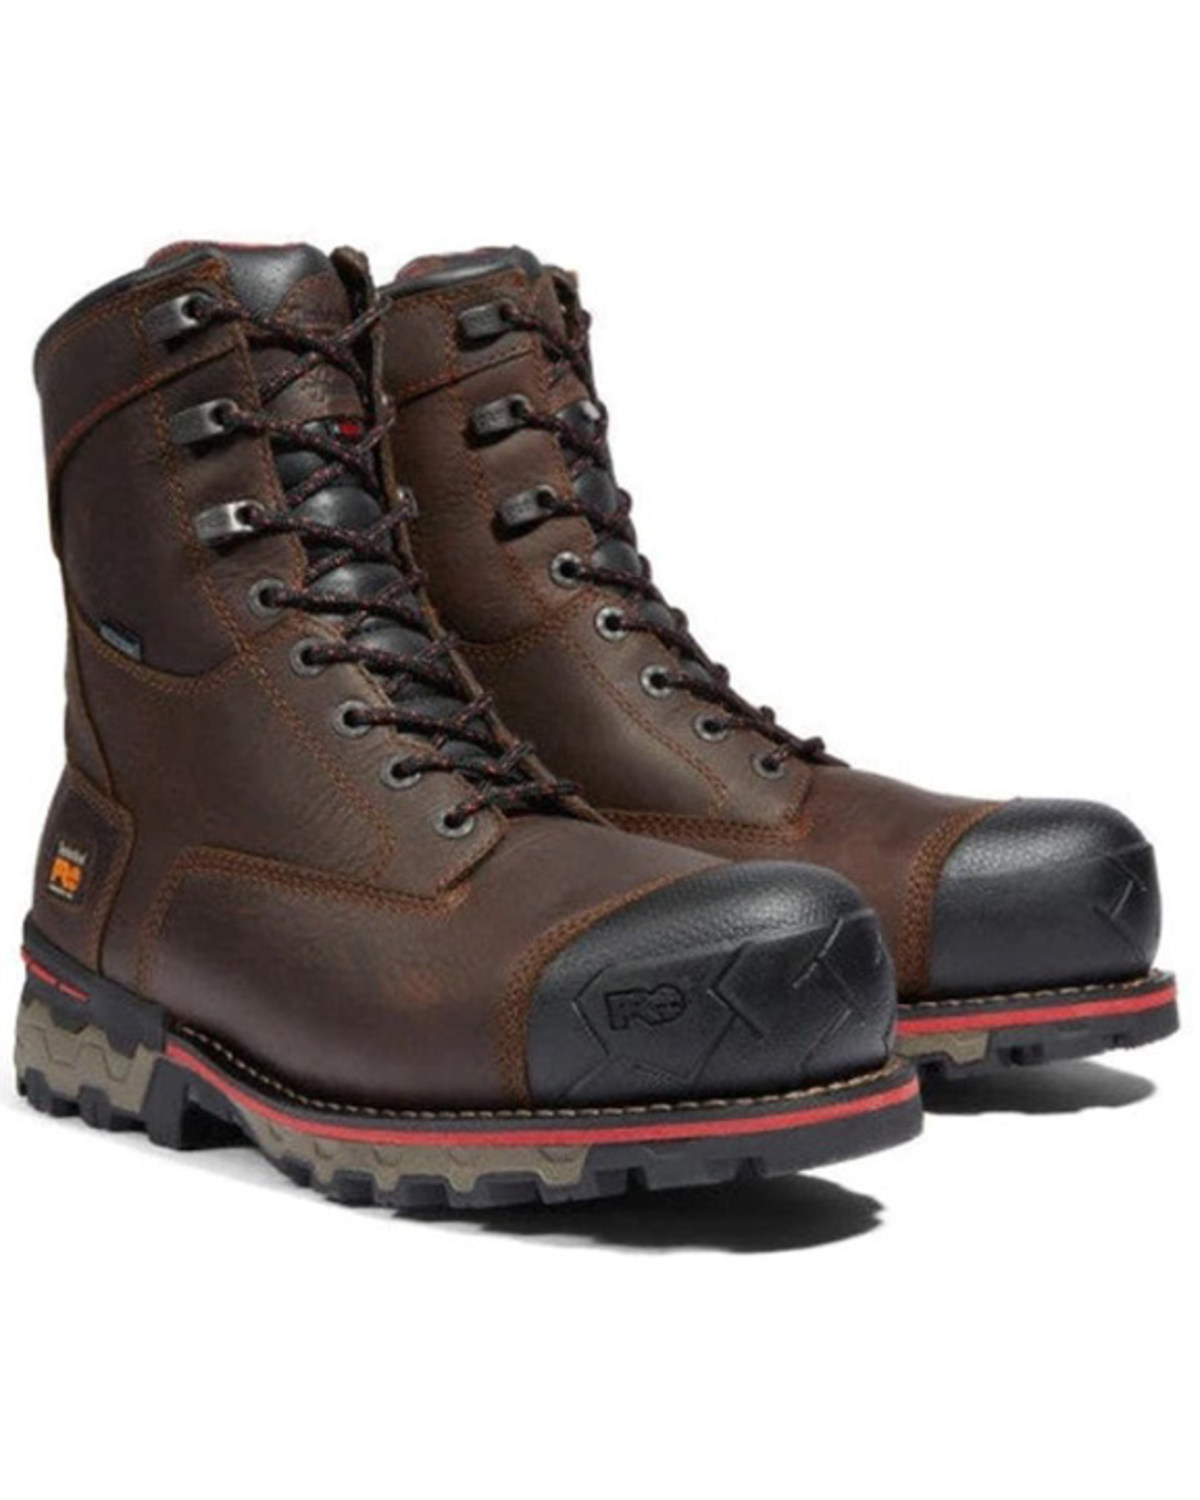 Timberland Men's 8" Boondock Waterproof Work Boots - Composite Toe